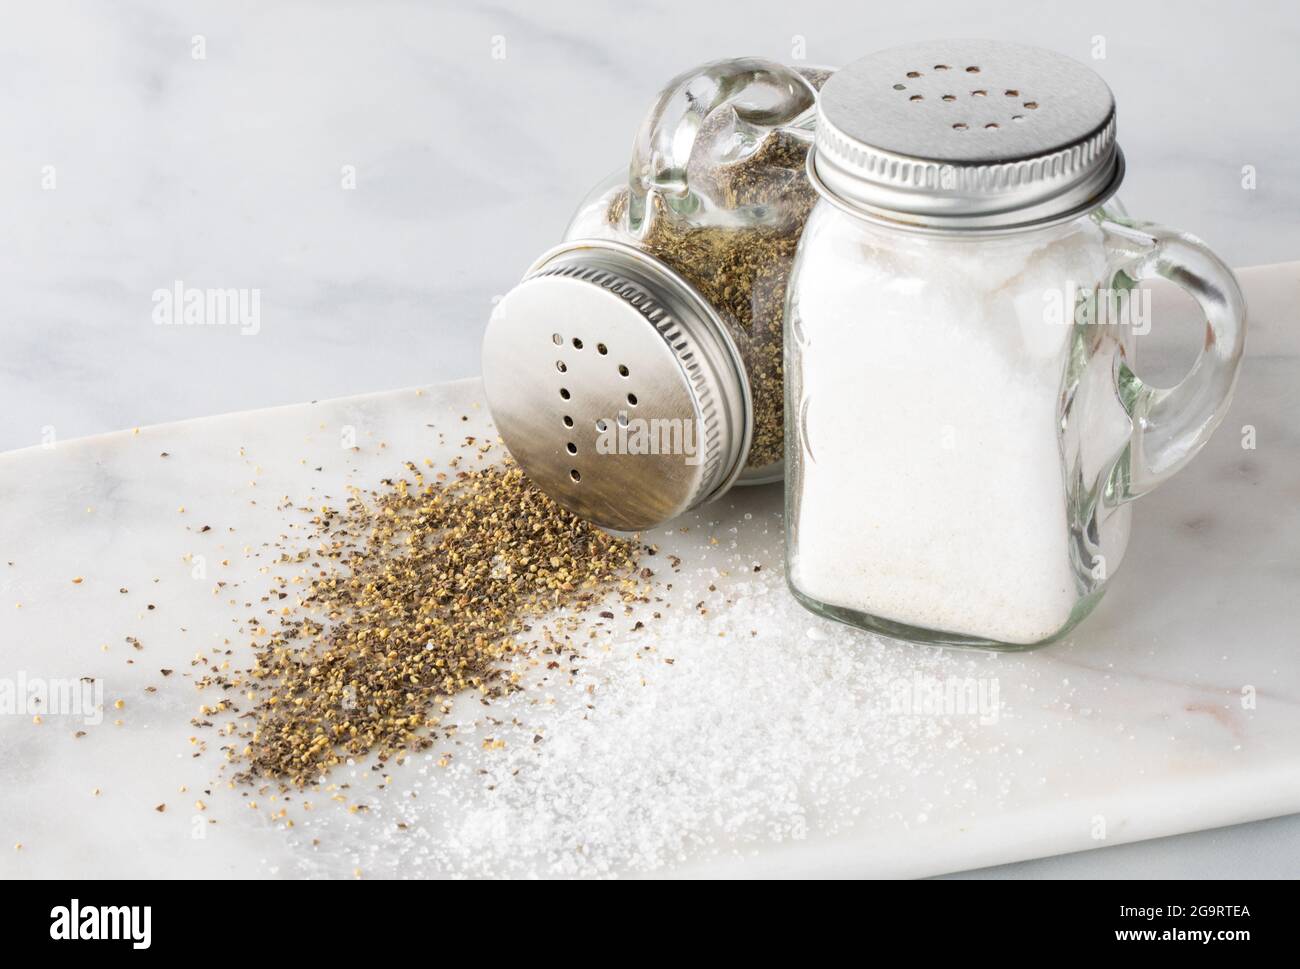 Primo piano di shaker per sale e pepe con sale e pepe rovesciati davanti e il pepe rovesciato. Foto Stock